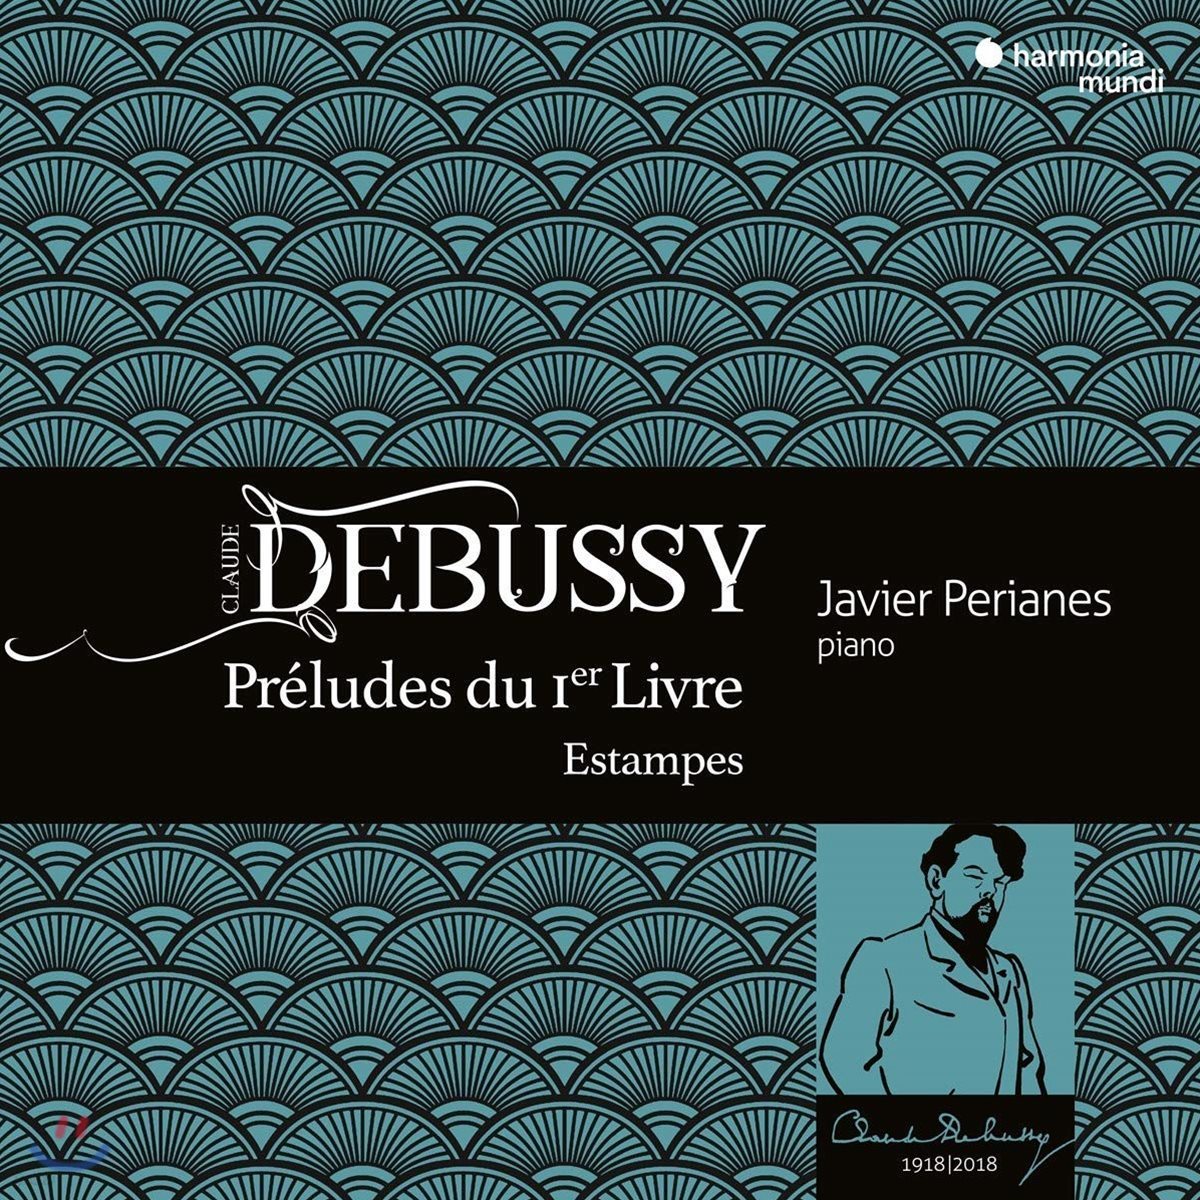 Javier Perianes 드뷔시: 전주곡 1권, 판화 (Debussy: Preludes du 1er Livre &amp; Estampes)